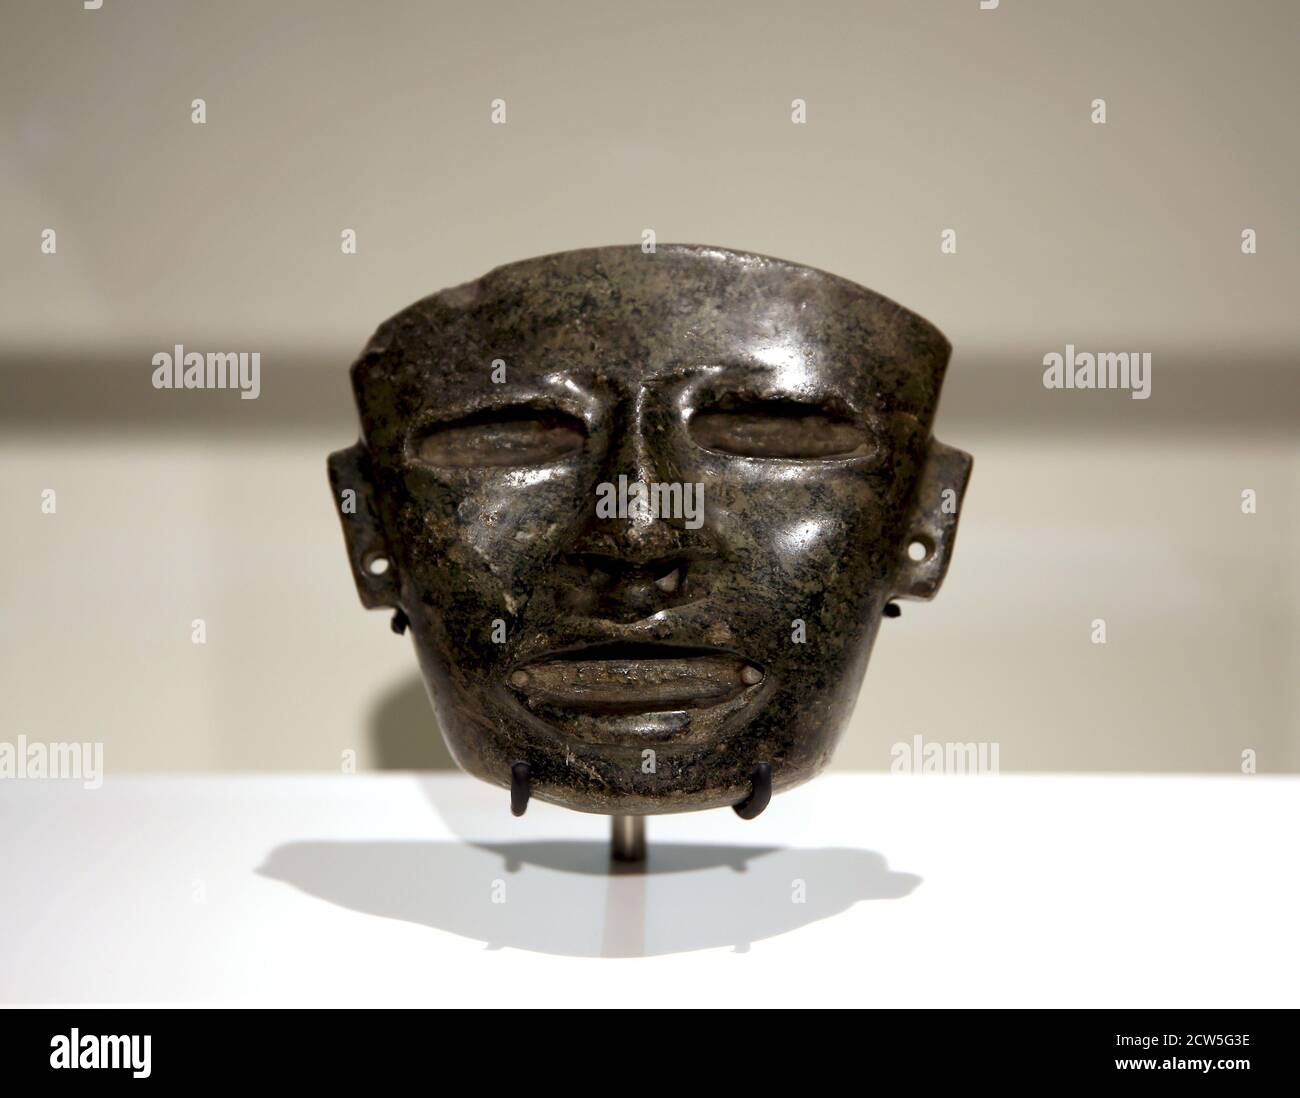 Masque en pierre représentant un visage d'homme. Teotihuacan, Mexique (300-650 AD). Art funéraire Musée des cultures du monde. Barcelone, Espagne. Banque D'Images